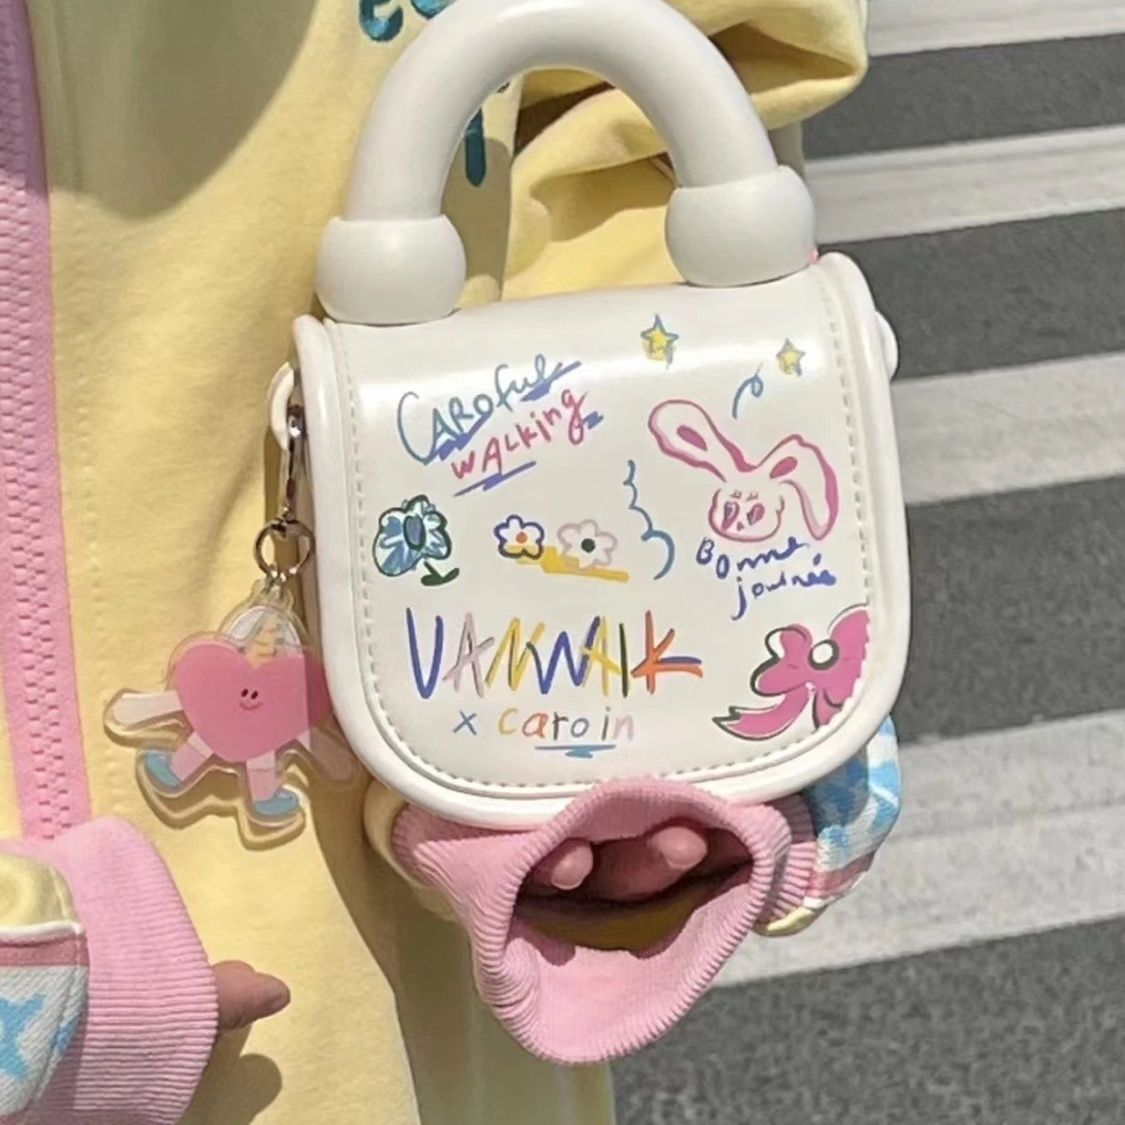 Homemade Sweetheart Girl Cream Bunny Cute Small Portable Messenger Bag ins Versatile